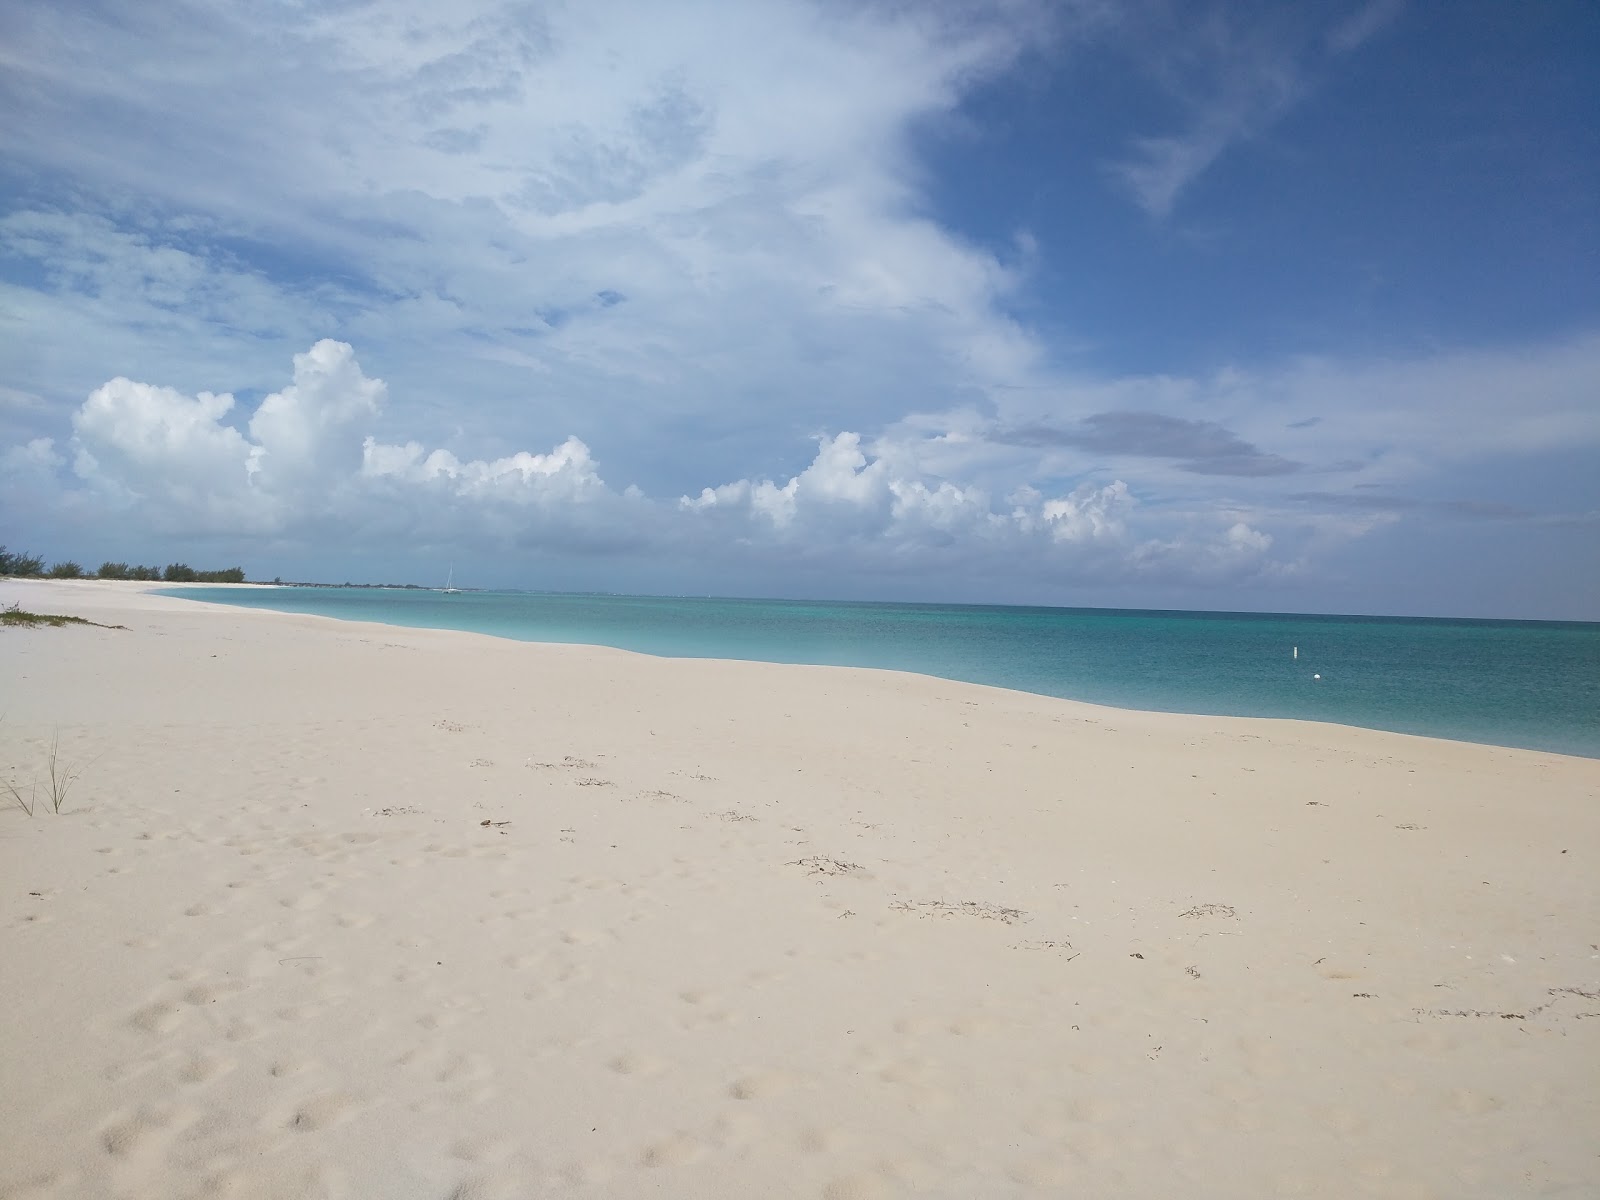 Fotografie cu Pine Cay beach - locul popular printre cunoscătorii de relaxare